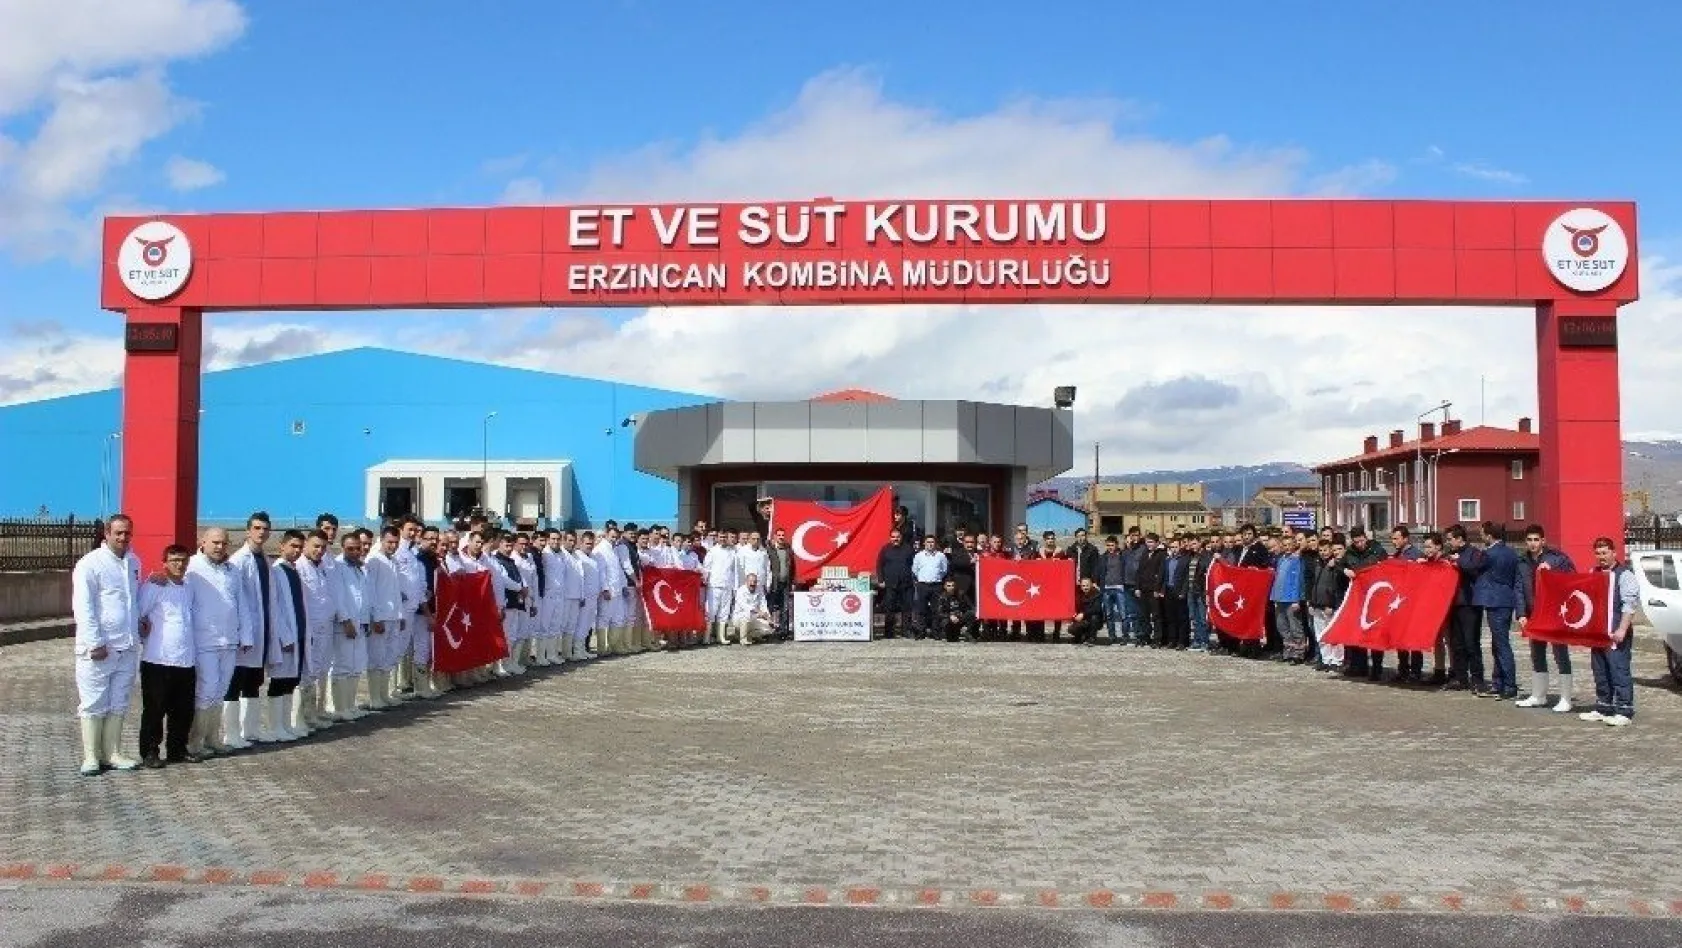 Erzincan Et ve Süt Kurumu çalışanları istihkaklarını Mehmetçiğe uğurladı
